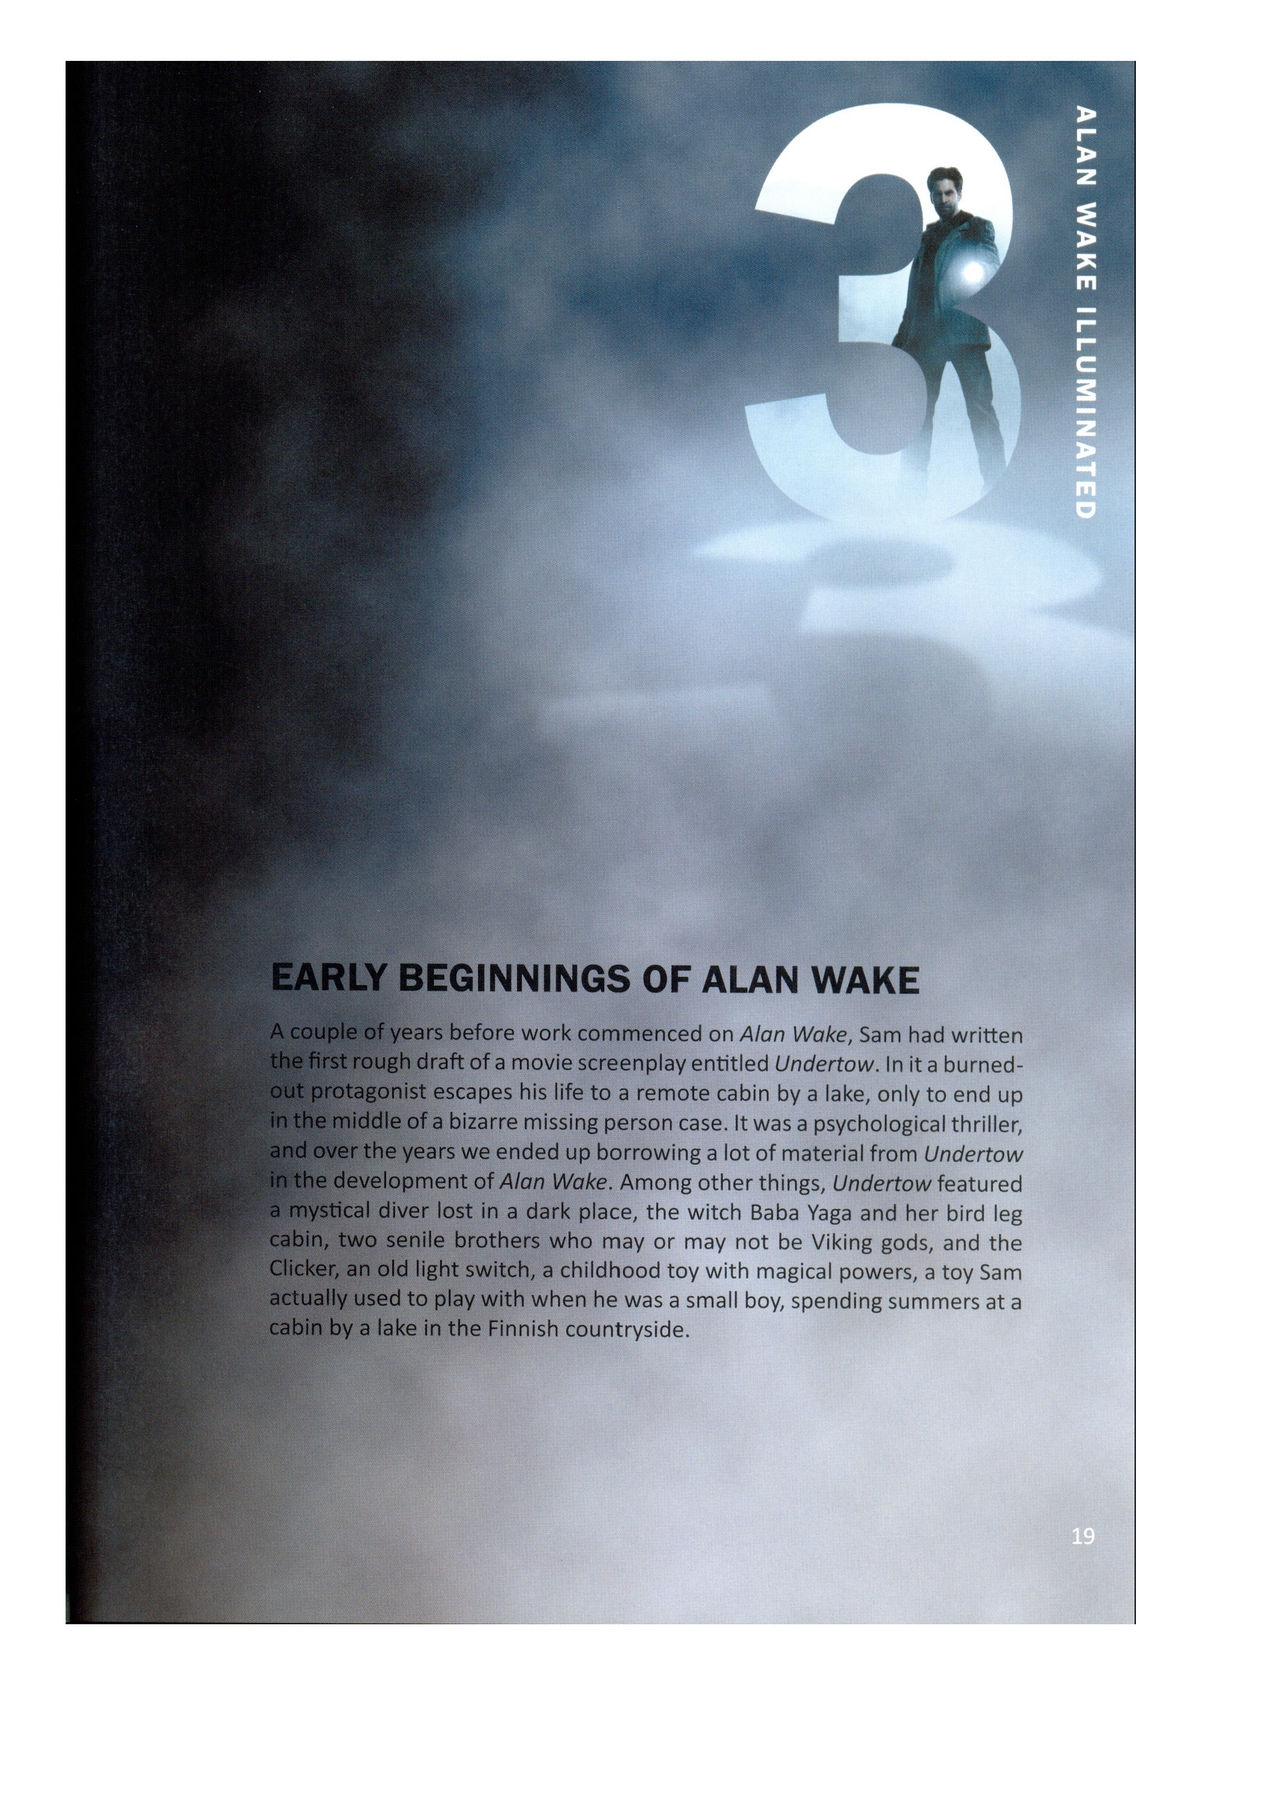 Alan Wake Illuminated 19